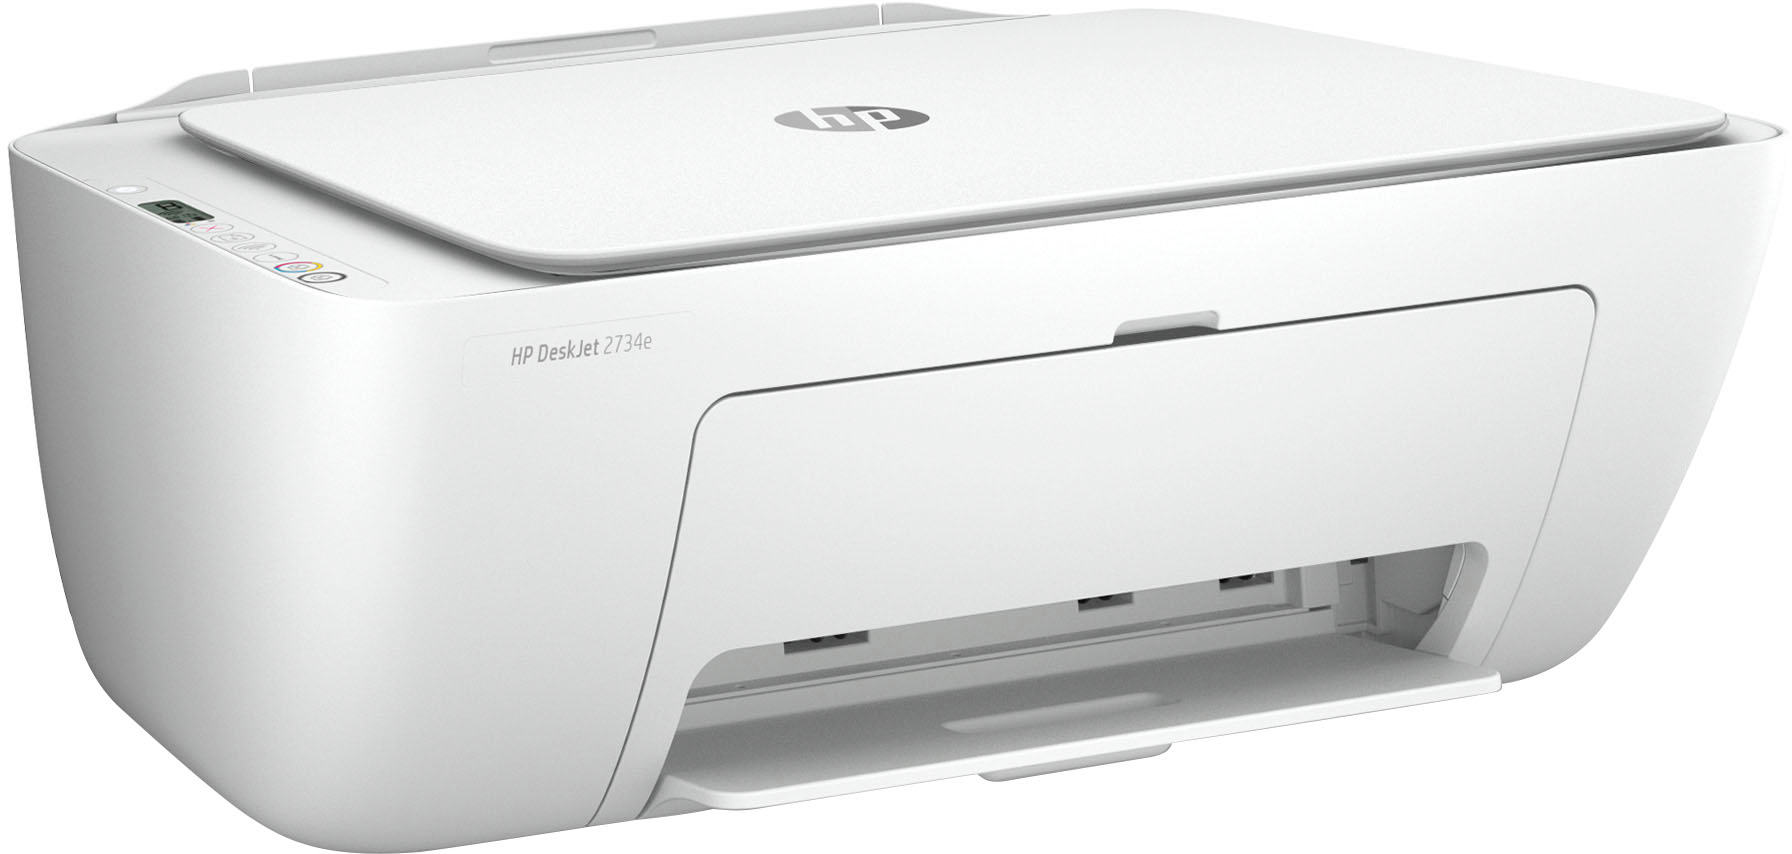 Best Buy: HP DeskJet 2734e Wireless Inkjet Printer with 3 months Instant included from White DeskJet 2734e